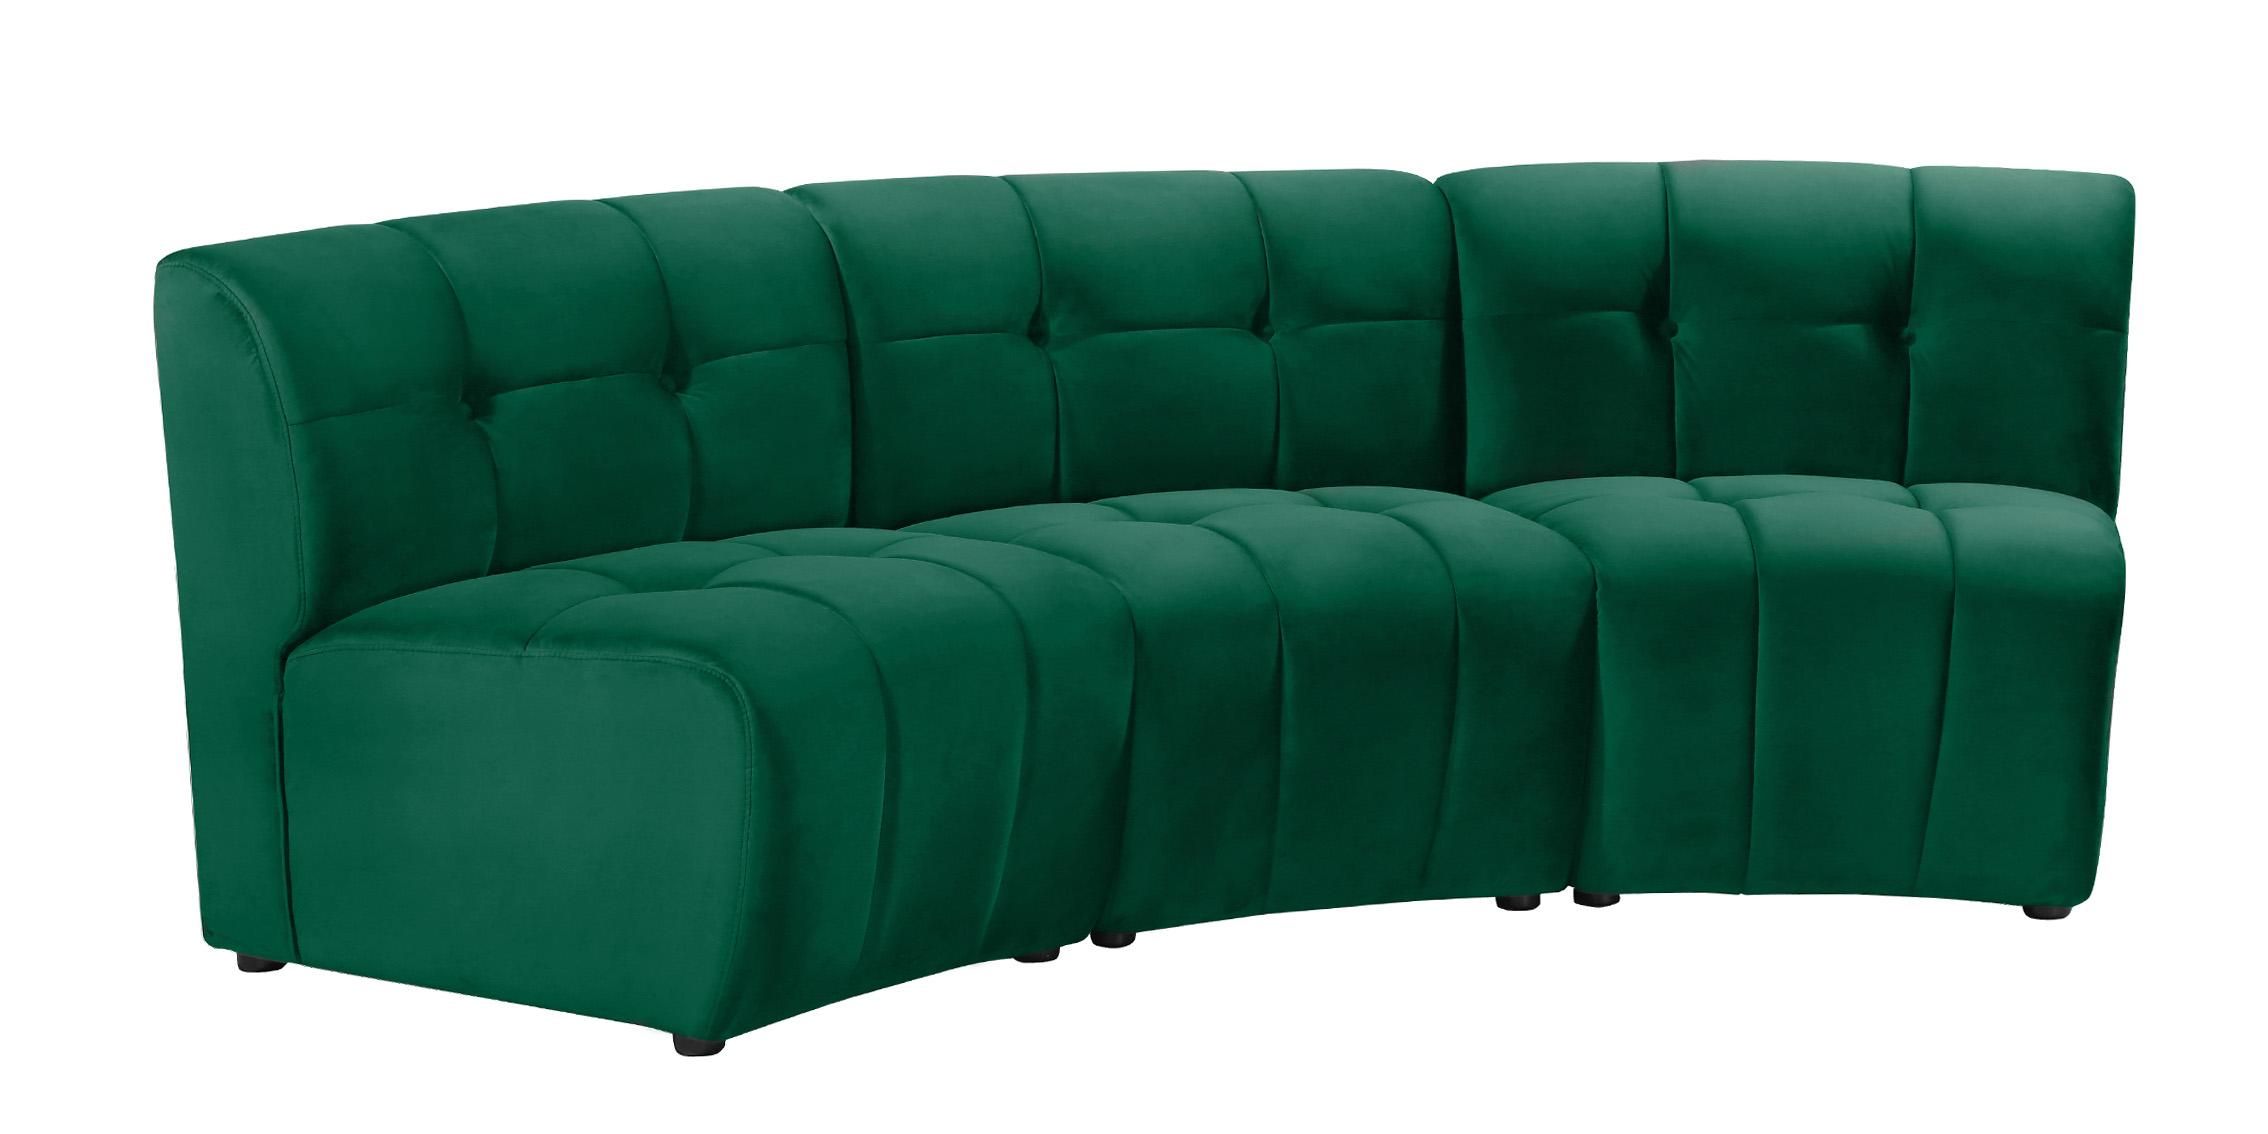 Green Velvet Modular Sectional Sofa Limitless 645green 3pc Meridian Modern  – Buy Online On Ny Furniture Outlet With Green Velvet Modular Sectionals (View 15 of 15)